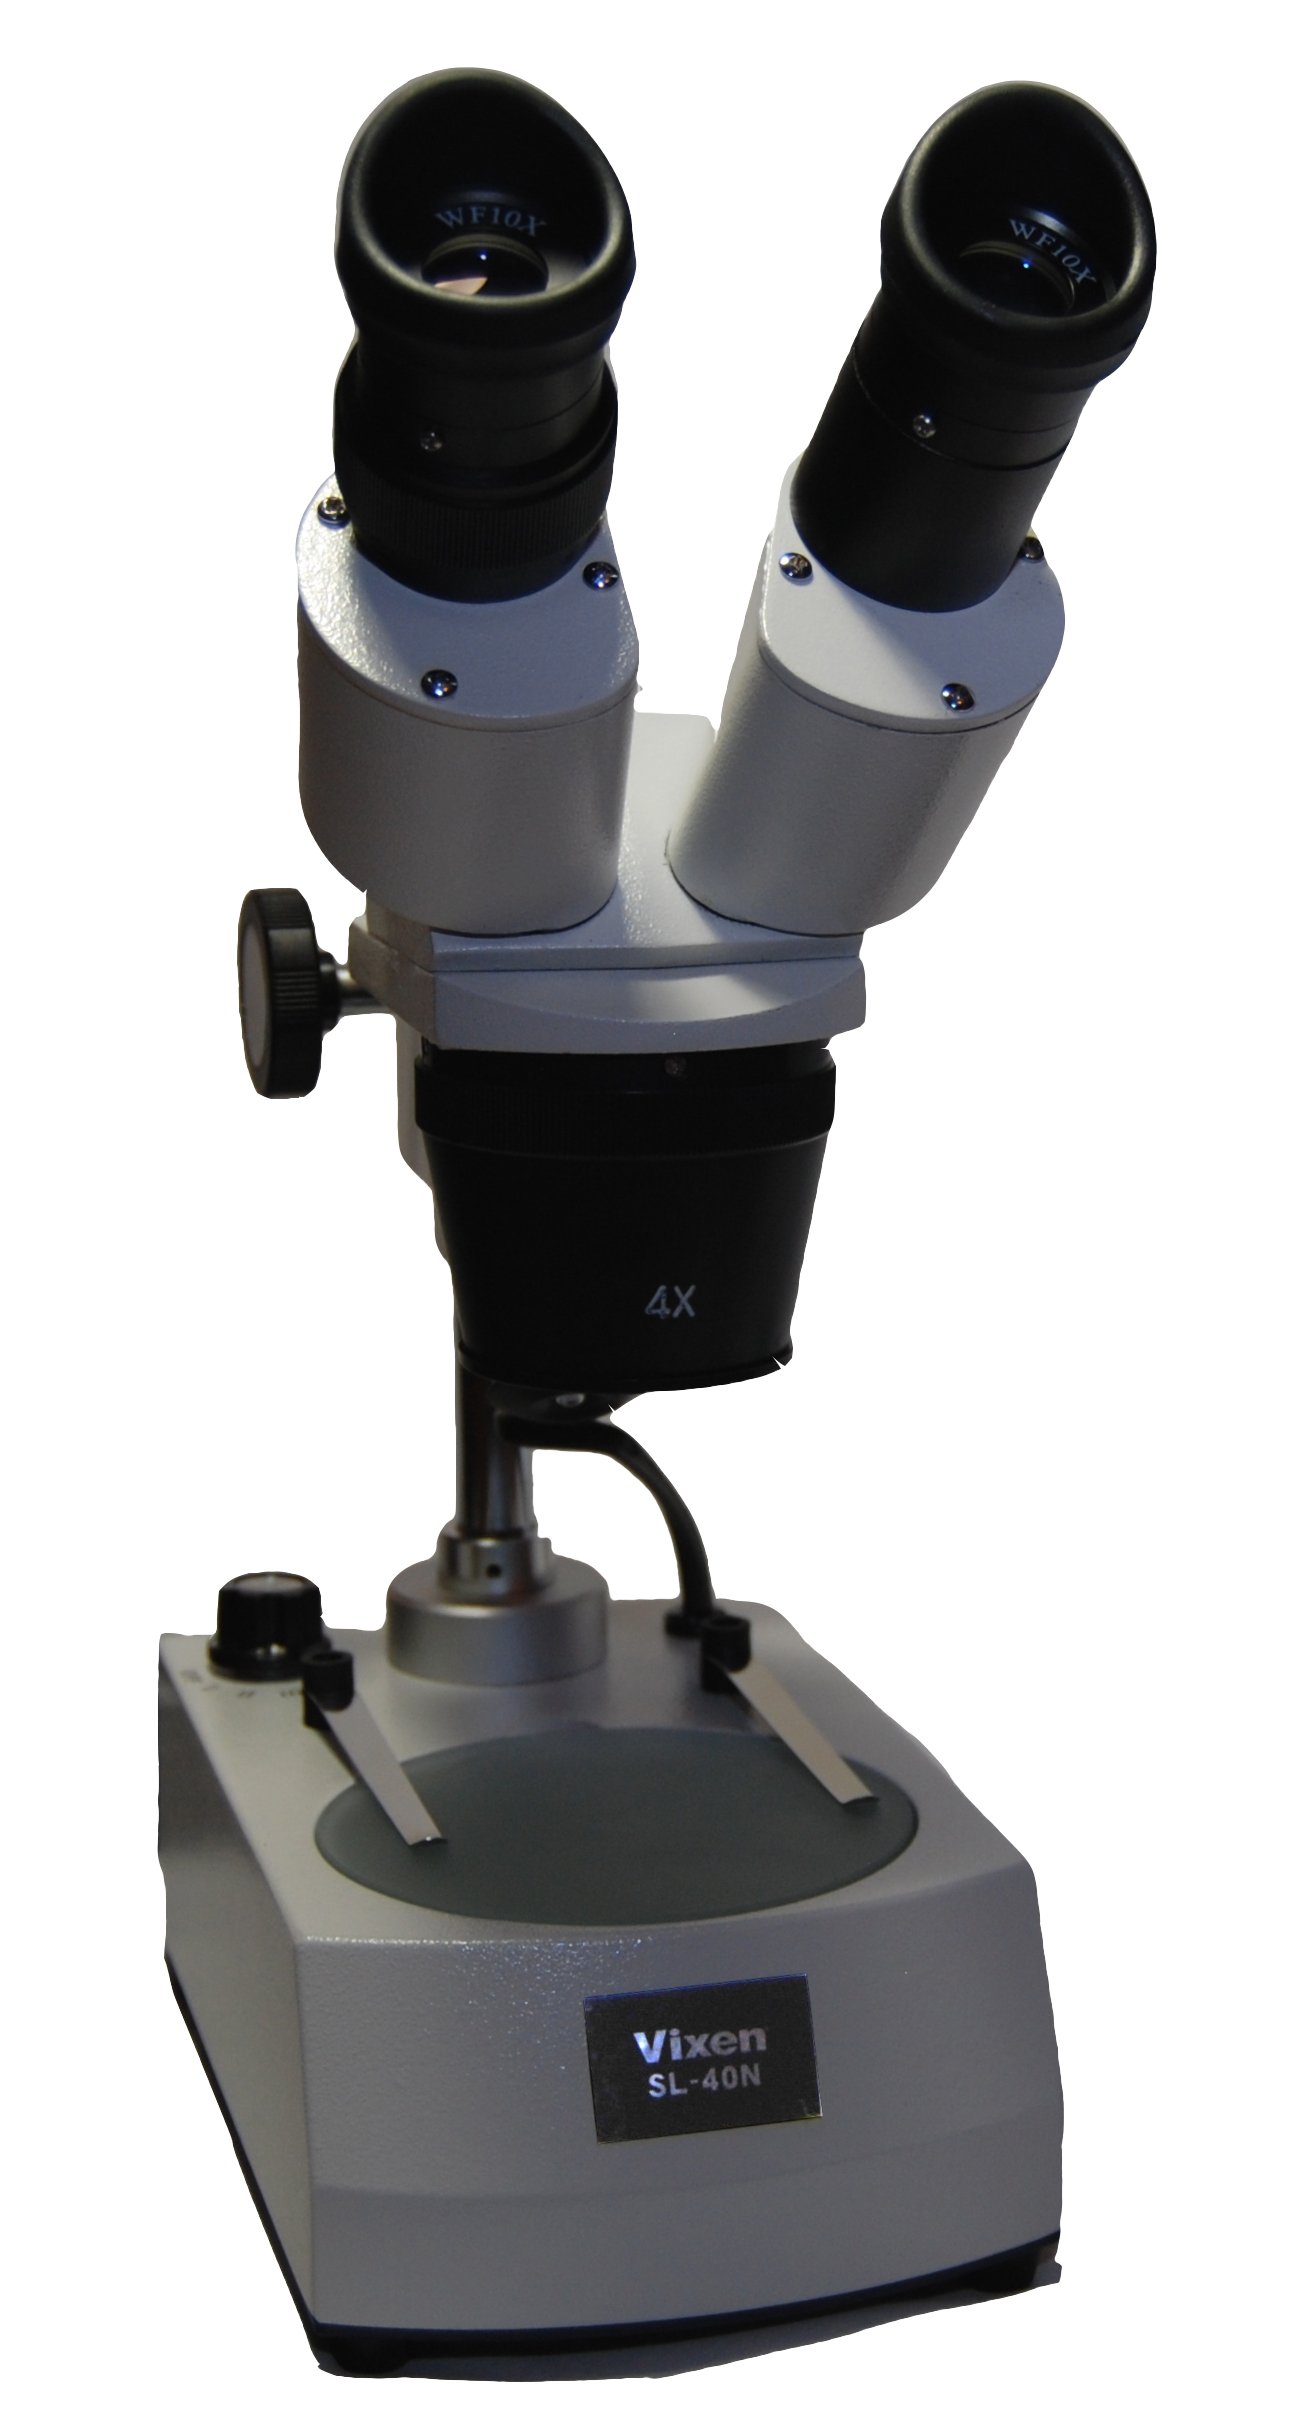 Review Spesifikasi dan Harga Jual Vixen SL-40N Microscope original termurah dan bergaransi resmi